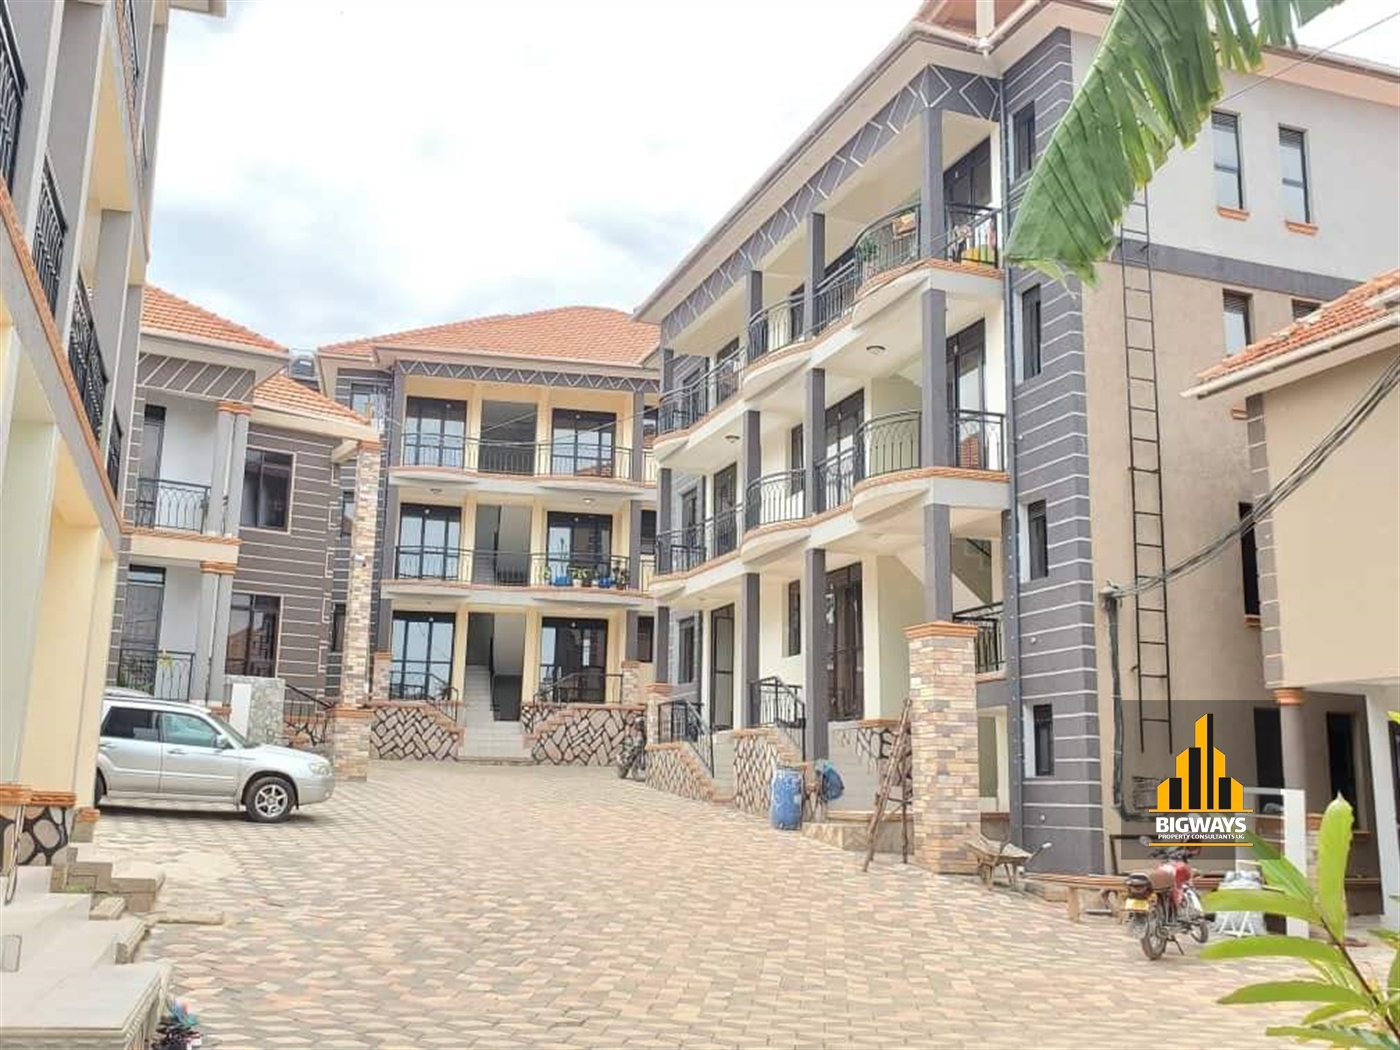 Apartment block for sale in Kyanja Kampala